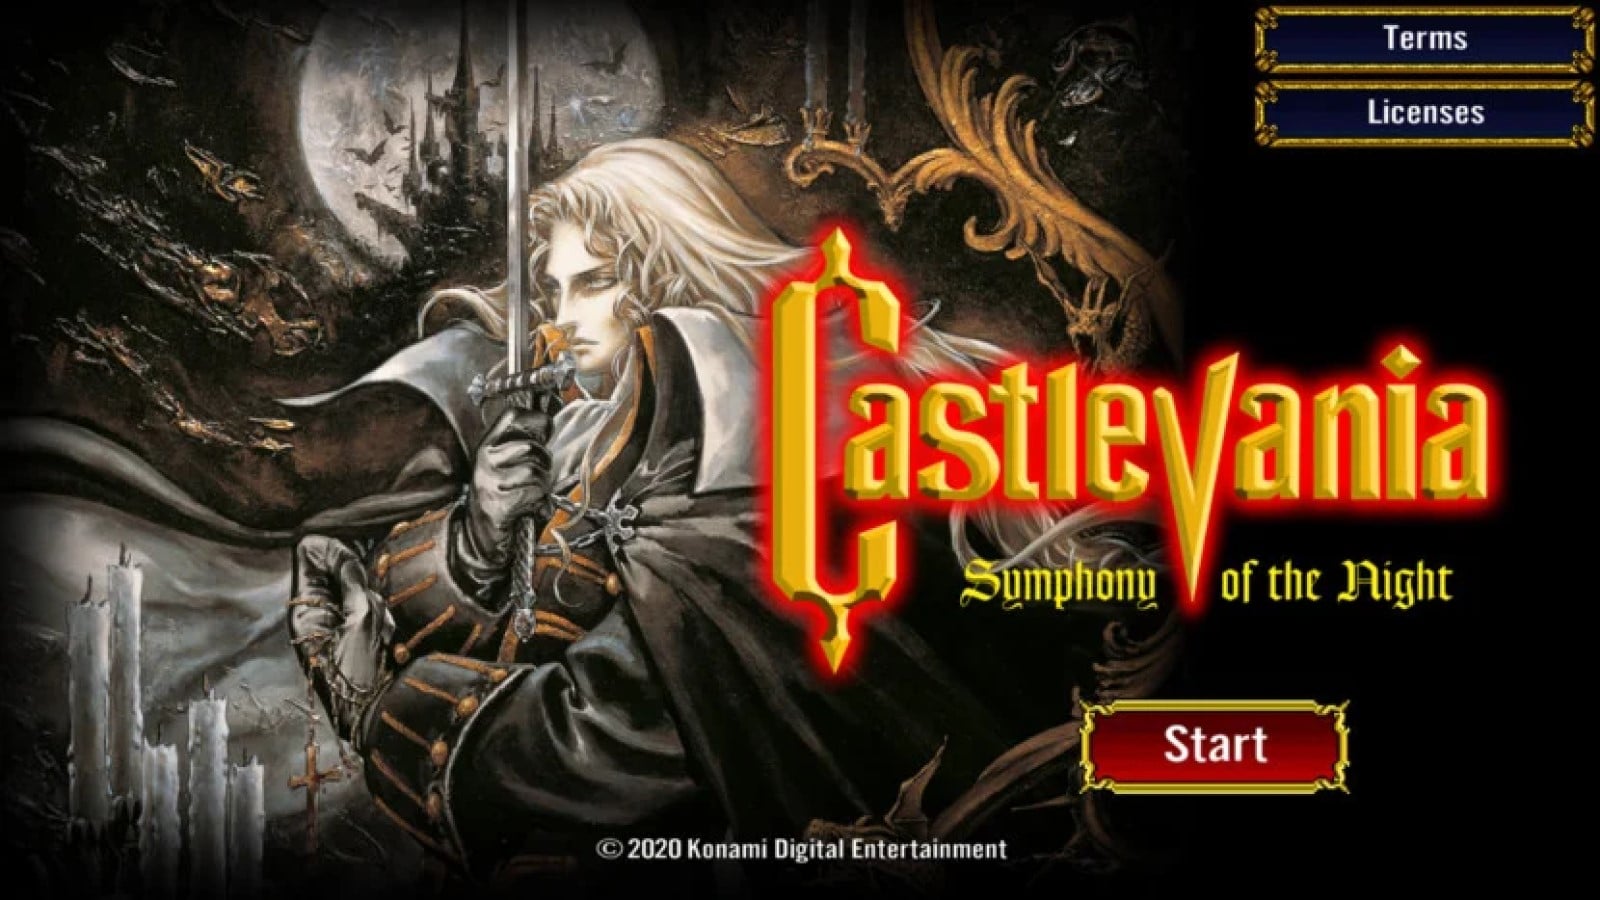 Castlevania symphonie de l'écran de démarrage de la nuit